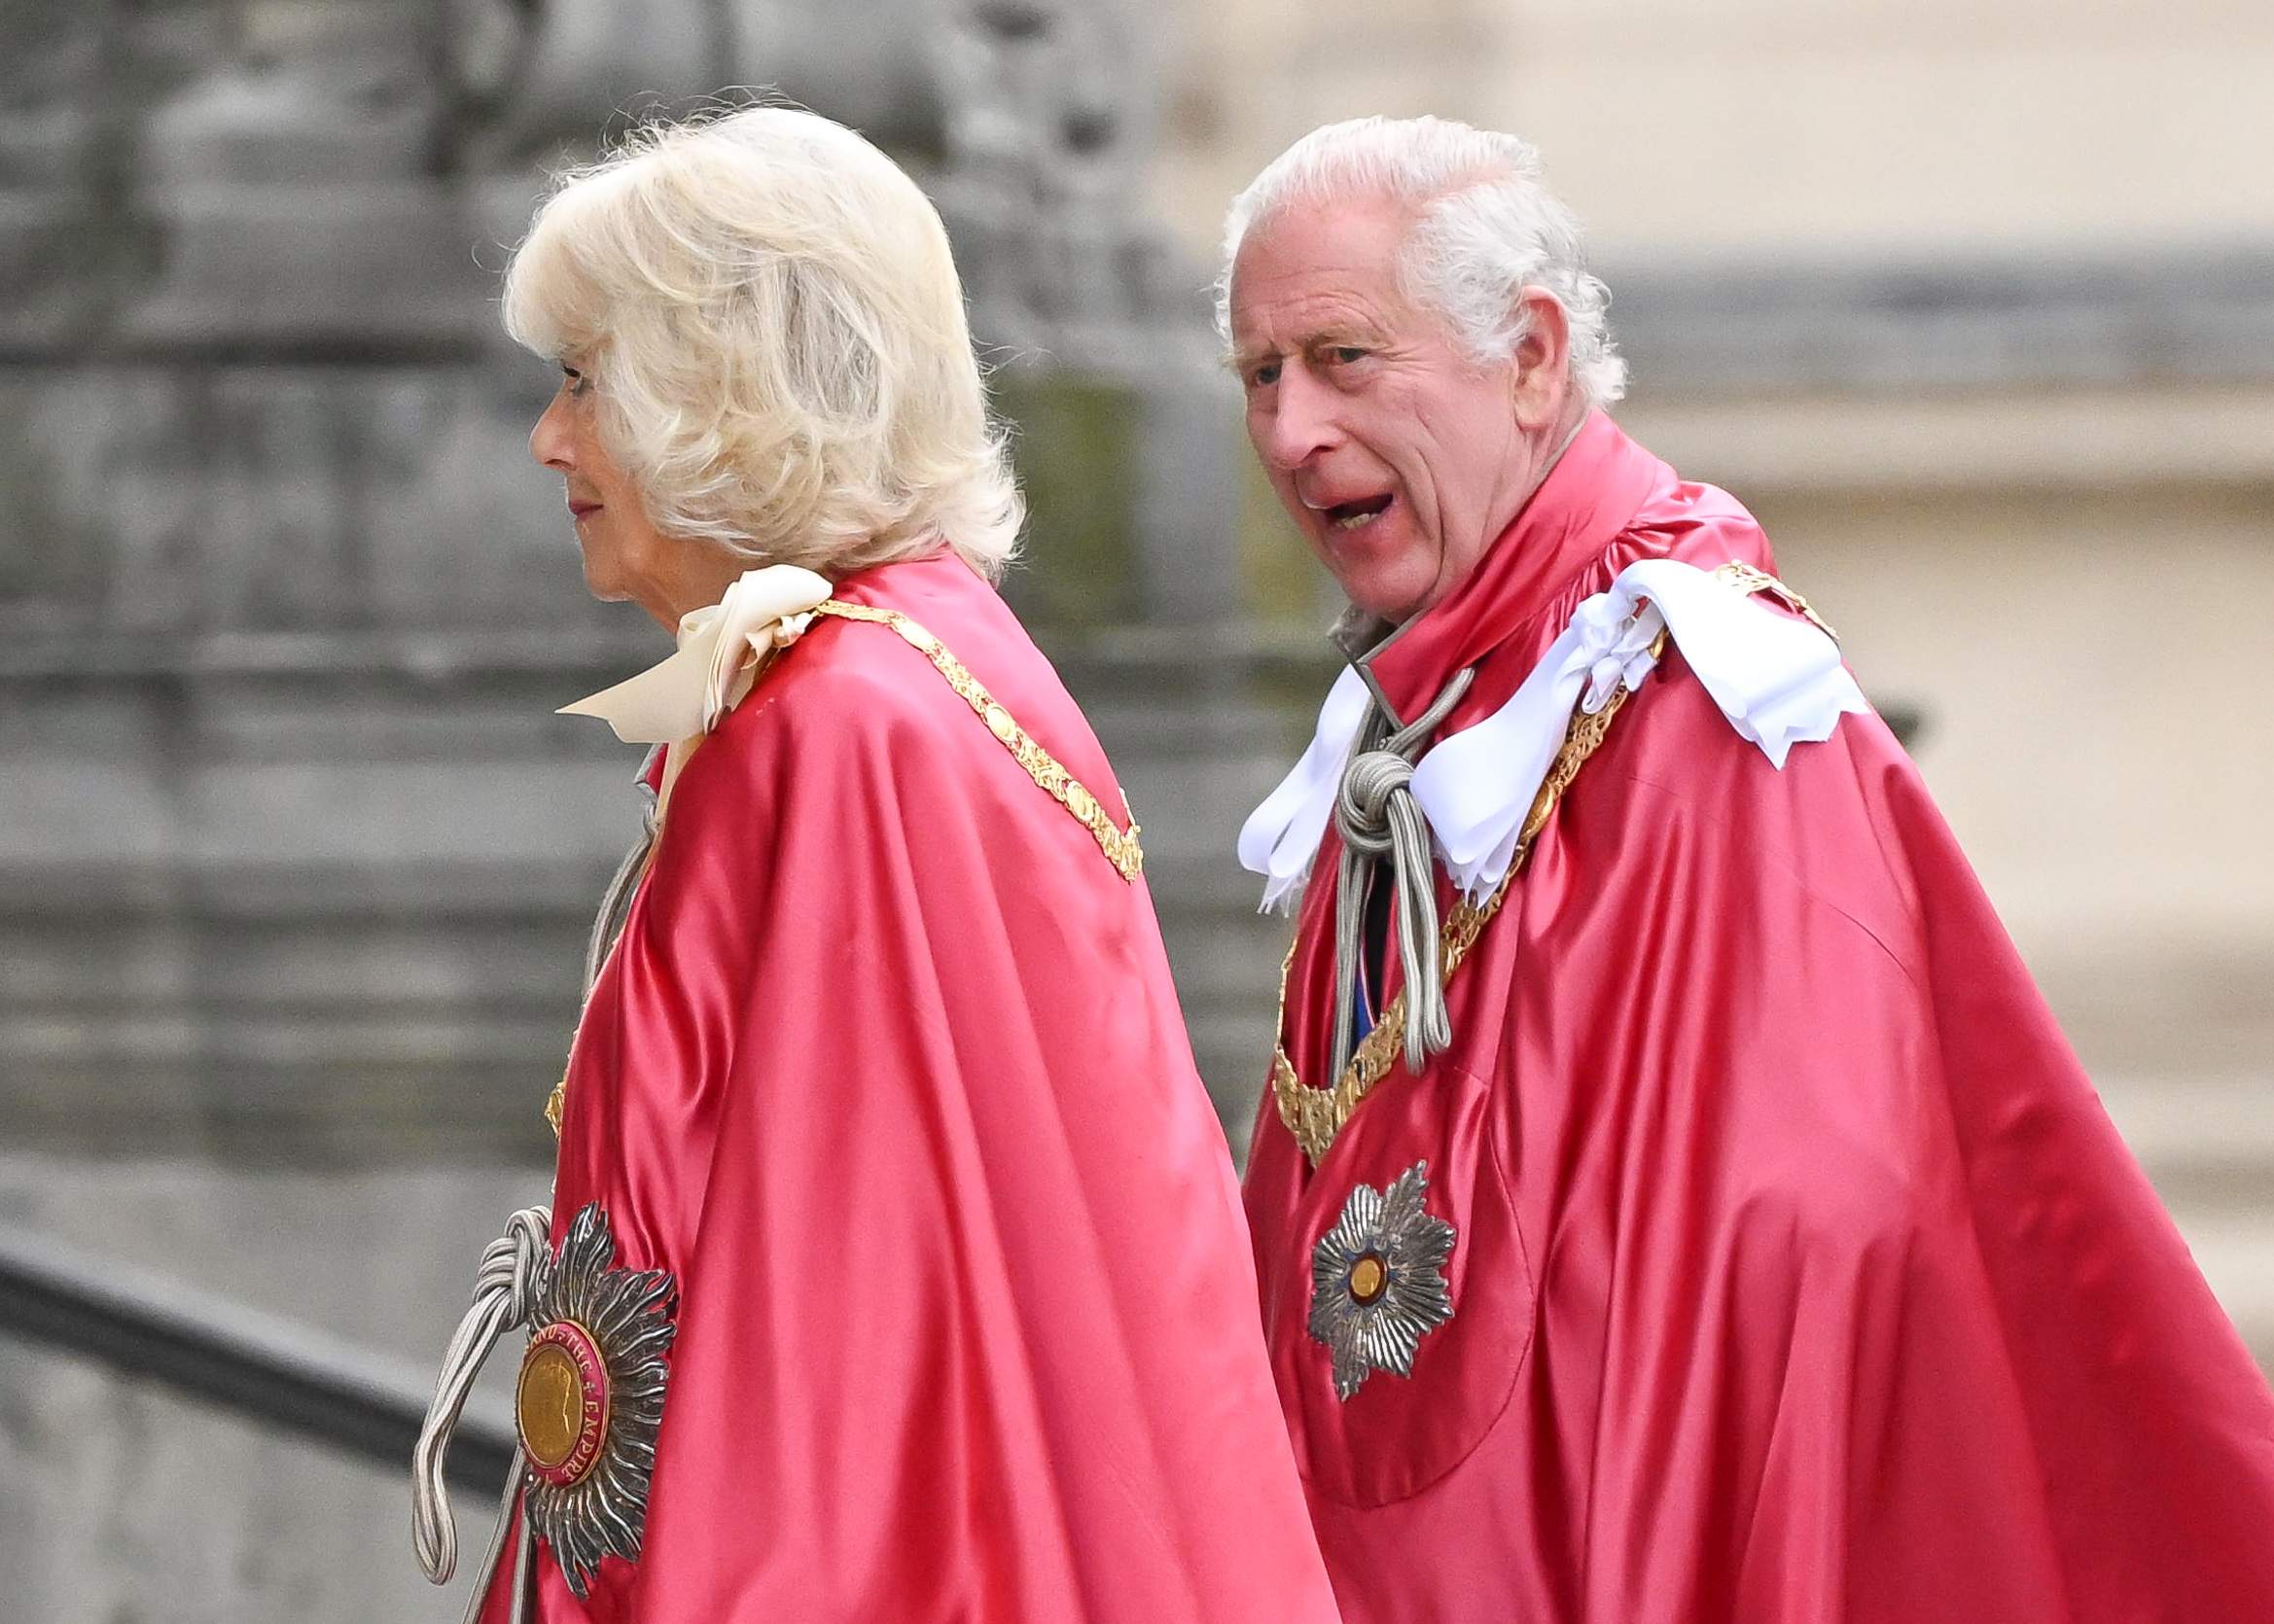 El retrato oficial de Carlos III altera al Reino Unido, “irás al infierno”